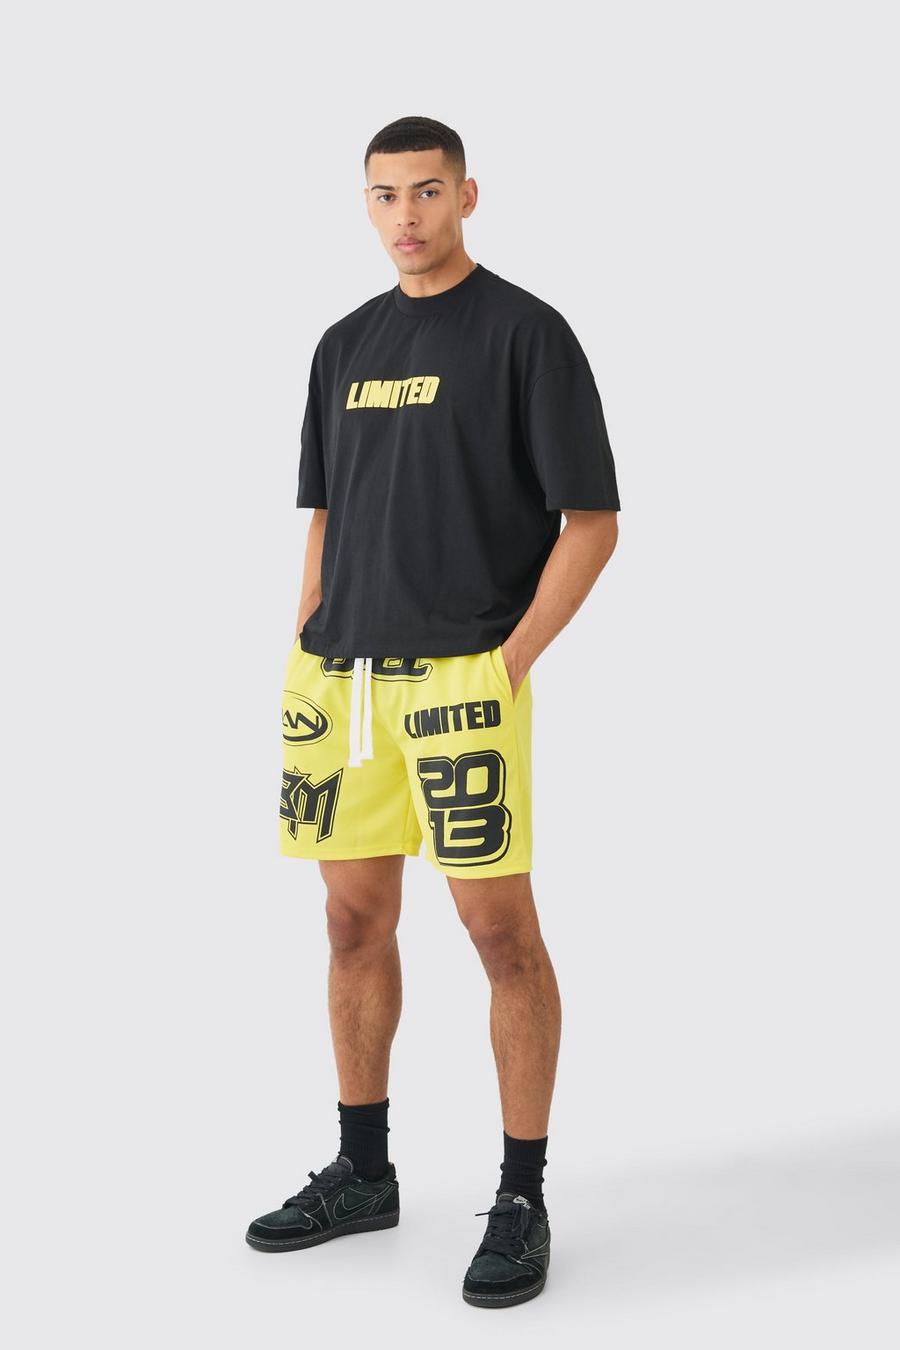 Pantalón corto de baloncesto de malla y camiseta oversize recta Limited, Black